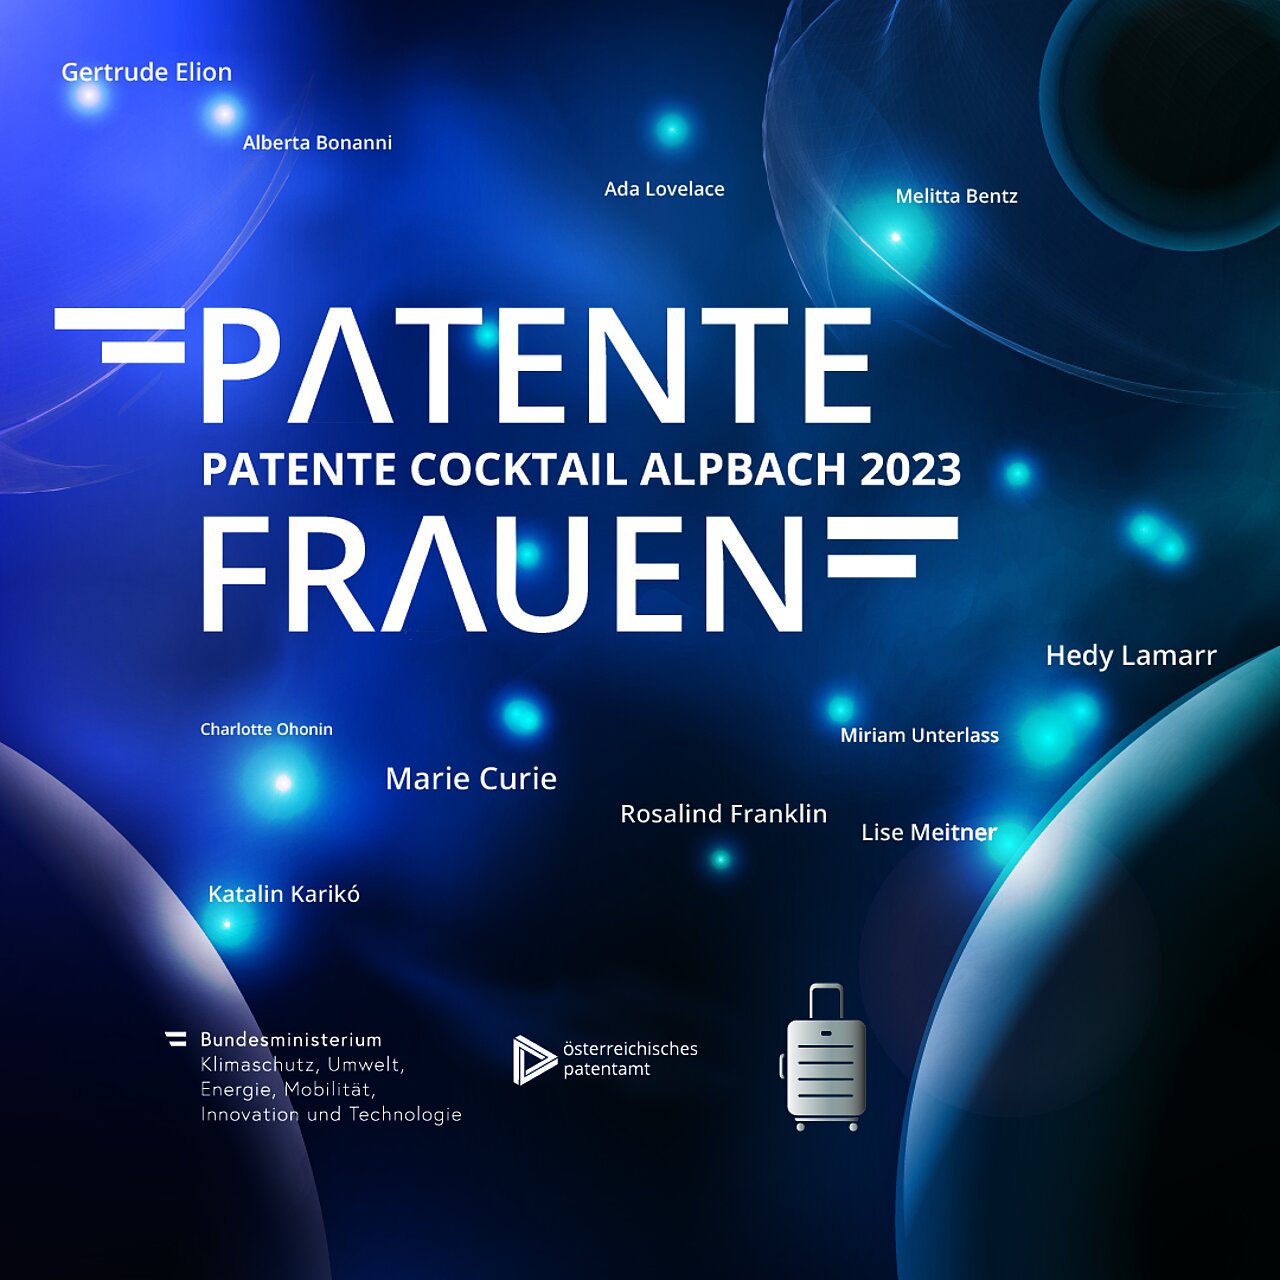 Patente Cocktail 2023: Patente Frauen